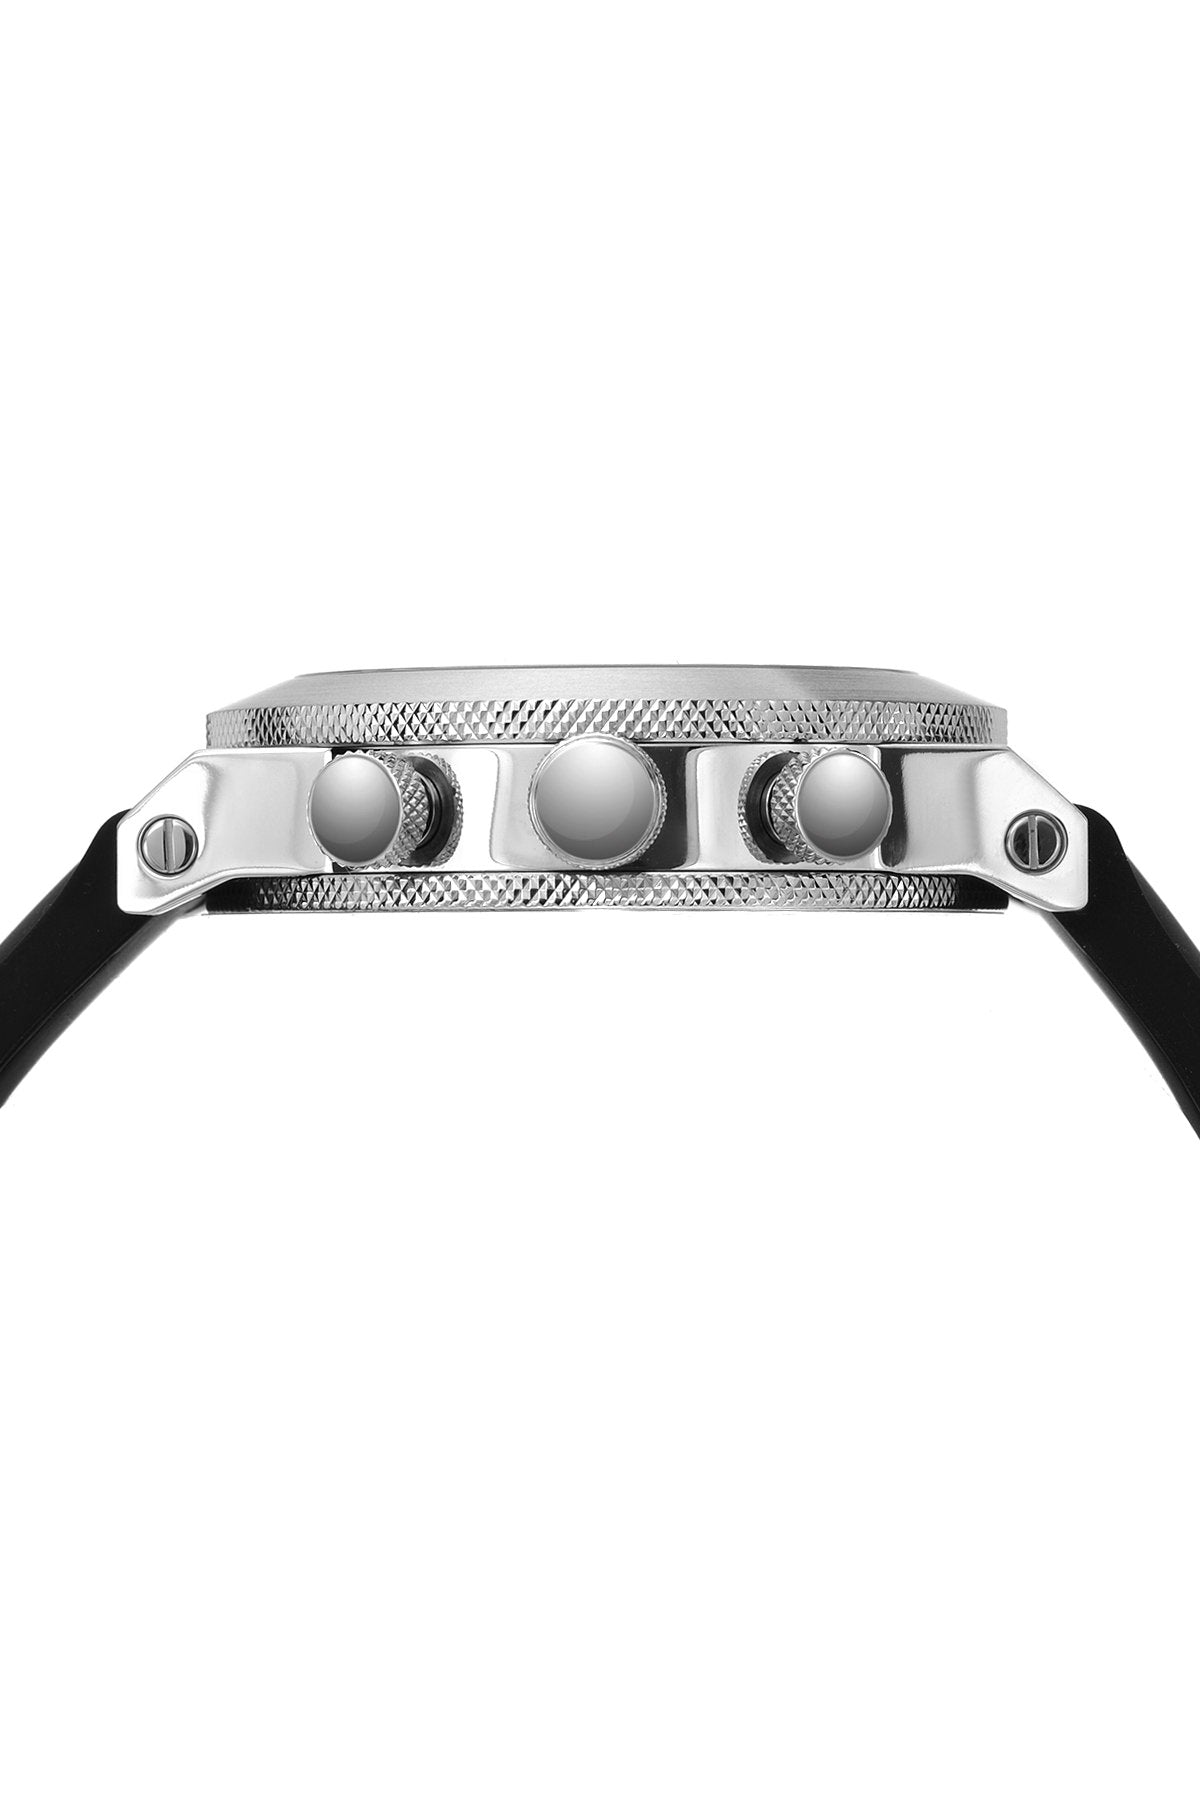 Porsamo Bleu Finley luxury chronograph men's watch, silicone strap, silver, black 401BFIR